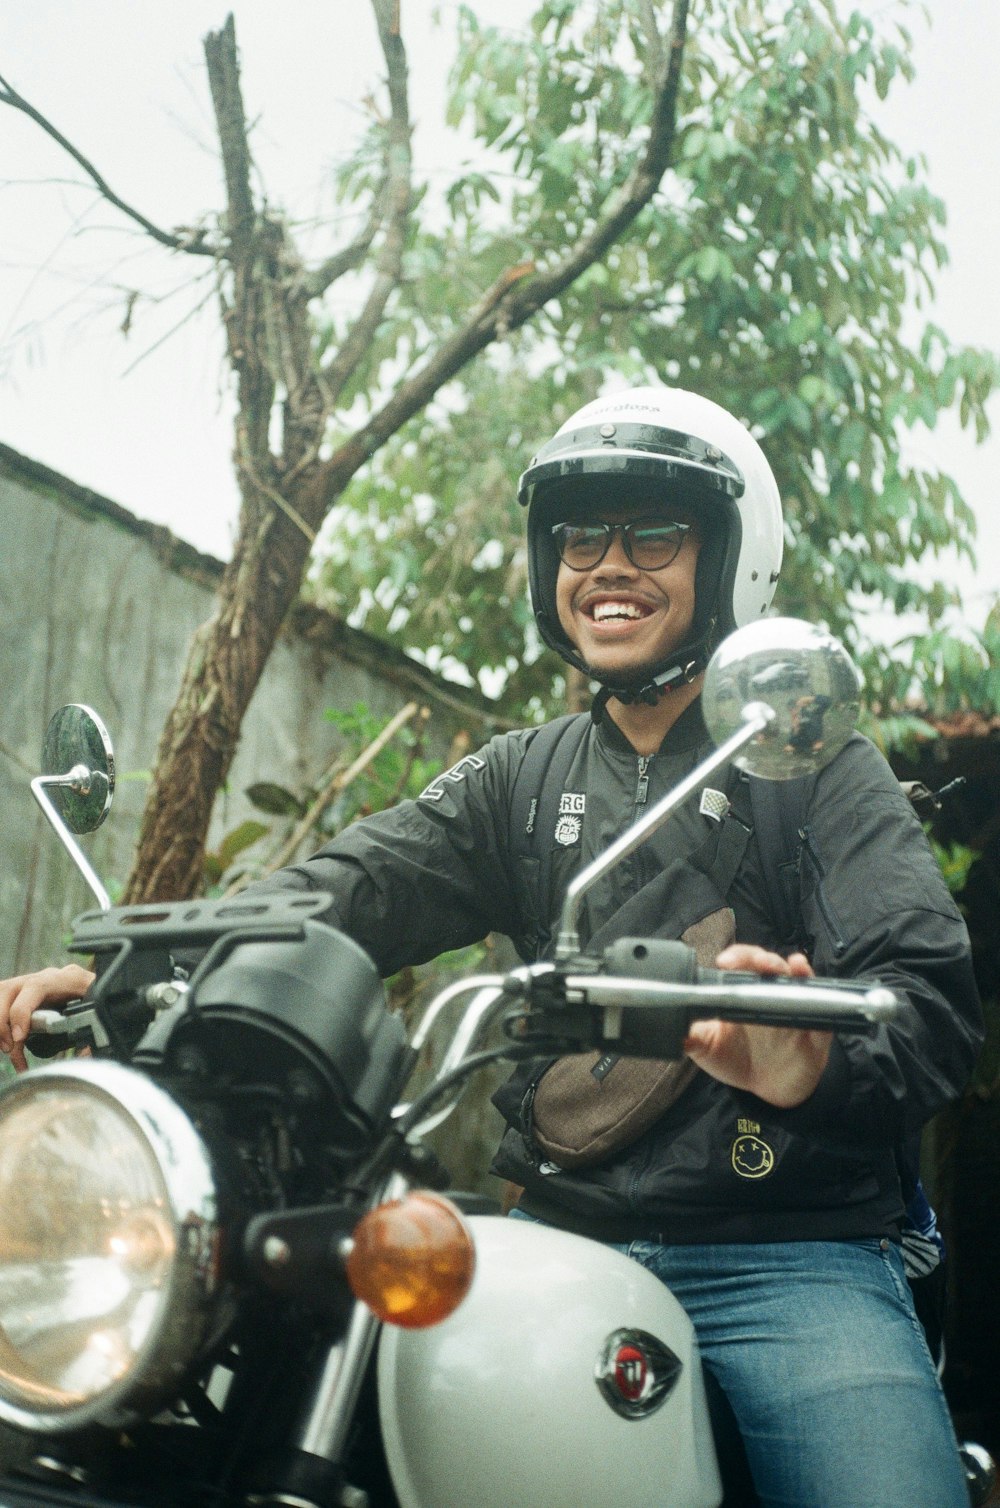 Mann in schwarzer Lederjacke mit Helm Motorradfahren tagsüber